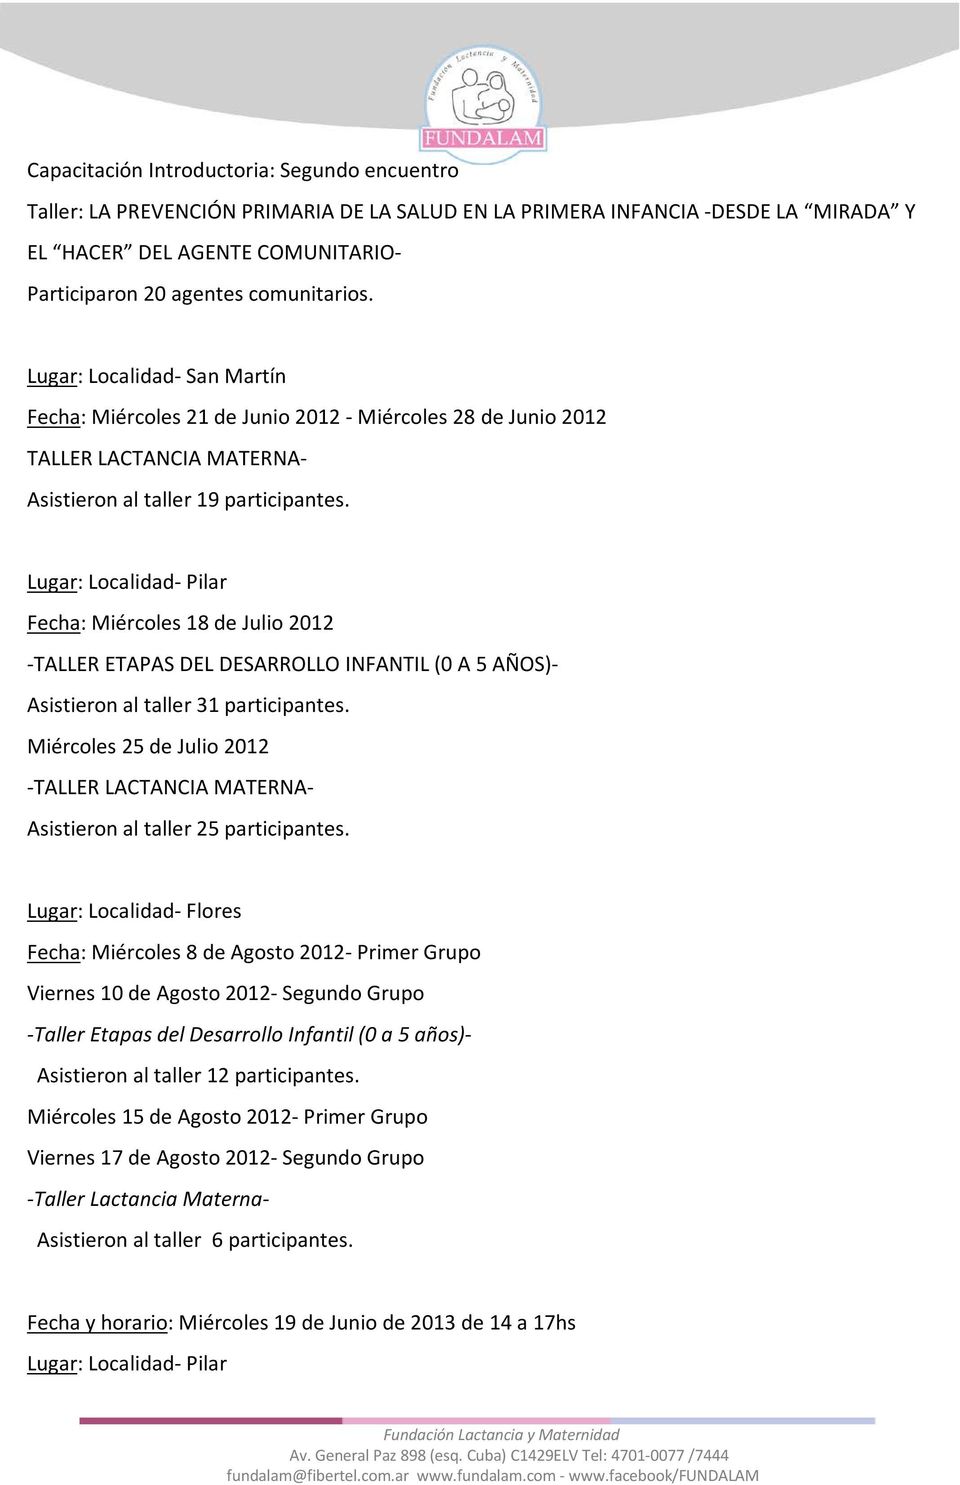 Lugar: Localidad- Pilar Fecha: Miércoles 18 de Julio 2012 -TALLER ETAPAS DEL DESARROLLO INFANTIL (0 A 5 AÑOS)- Asistieron al taller 31 participantes.